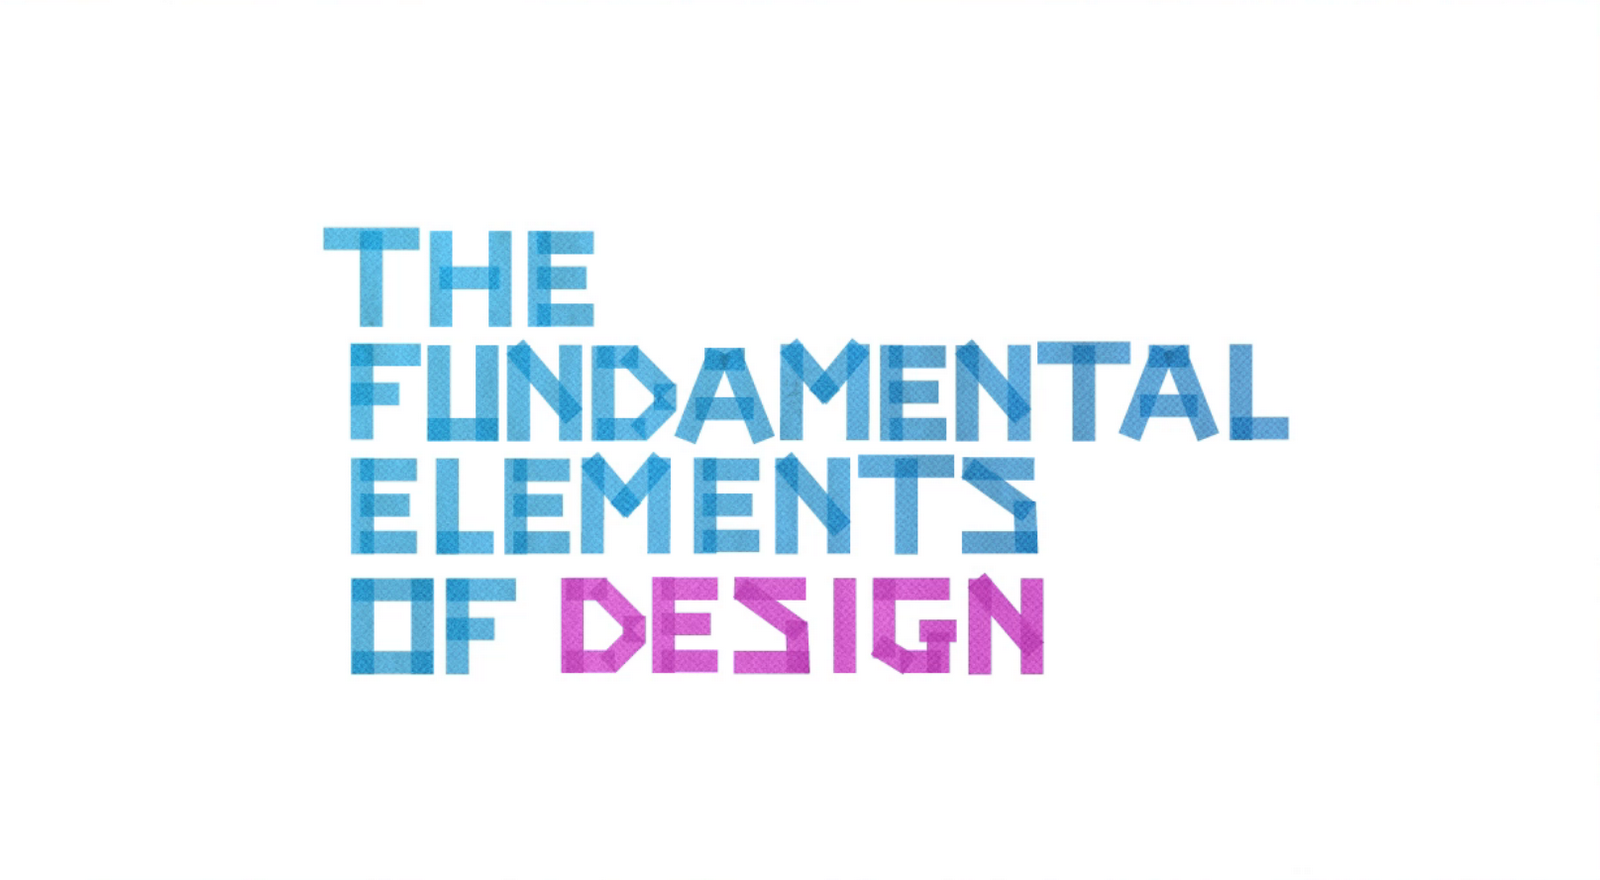 Graphic Design Fundamentals